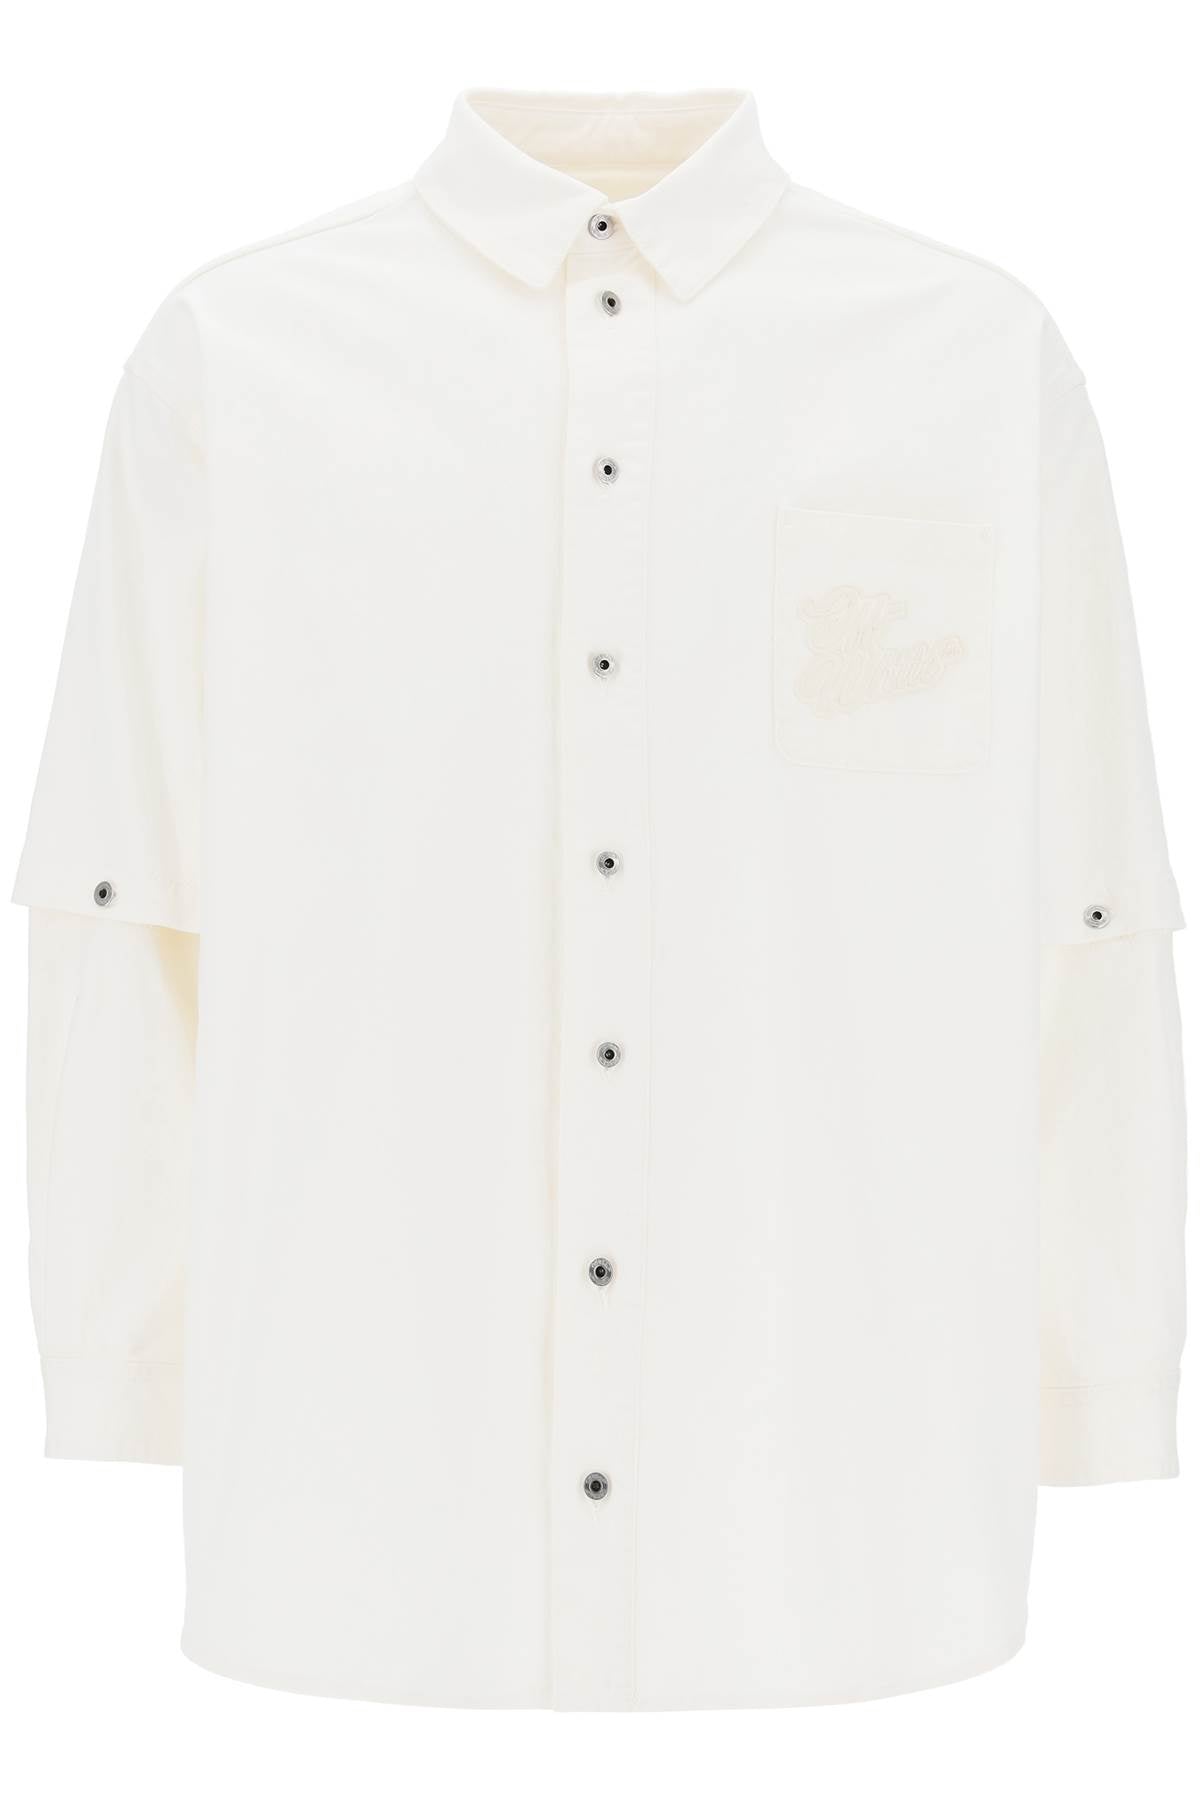 OFF-WHITE 90S Logo Raw White Denim Overshirt for Men